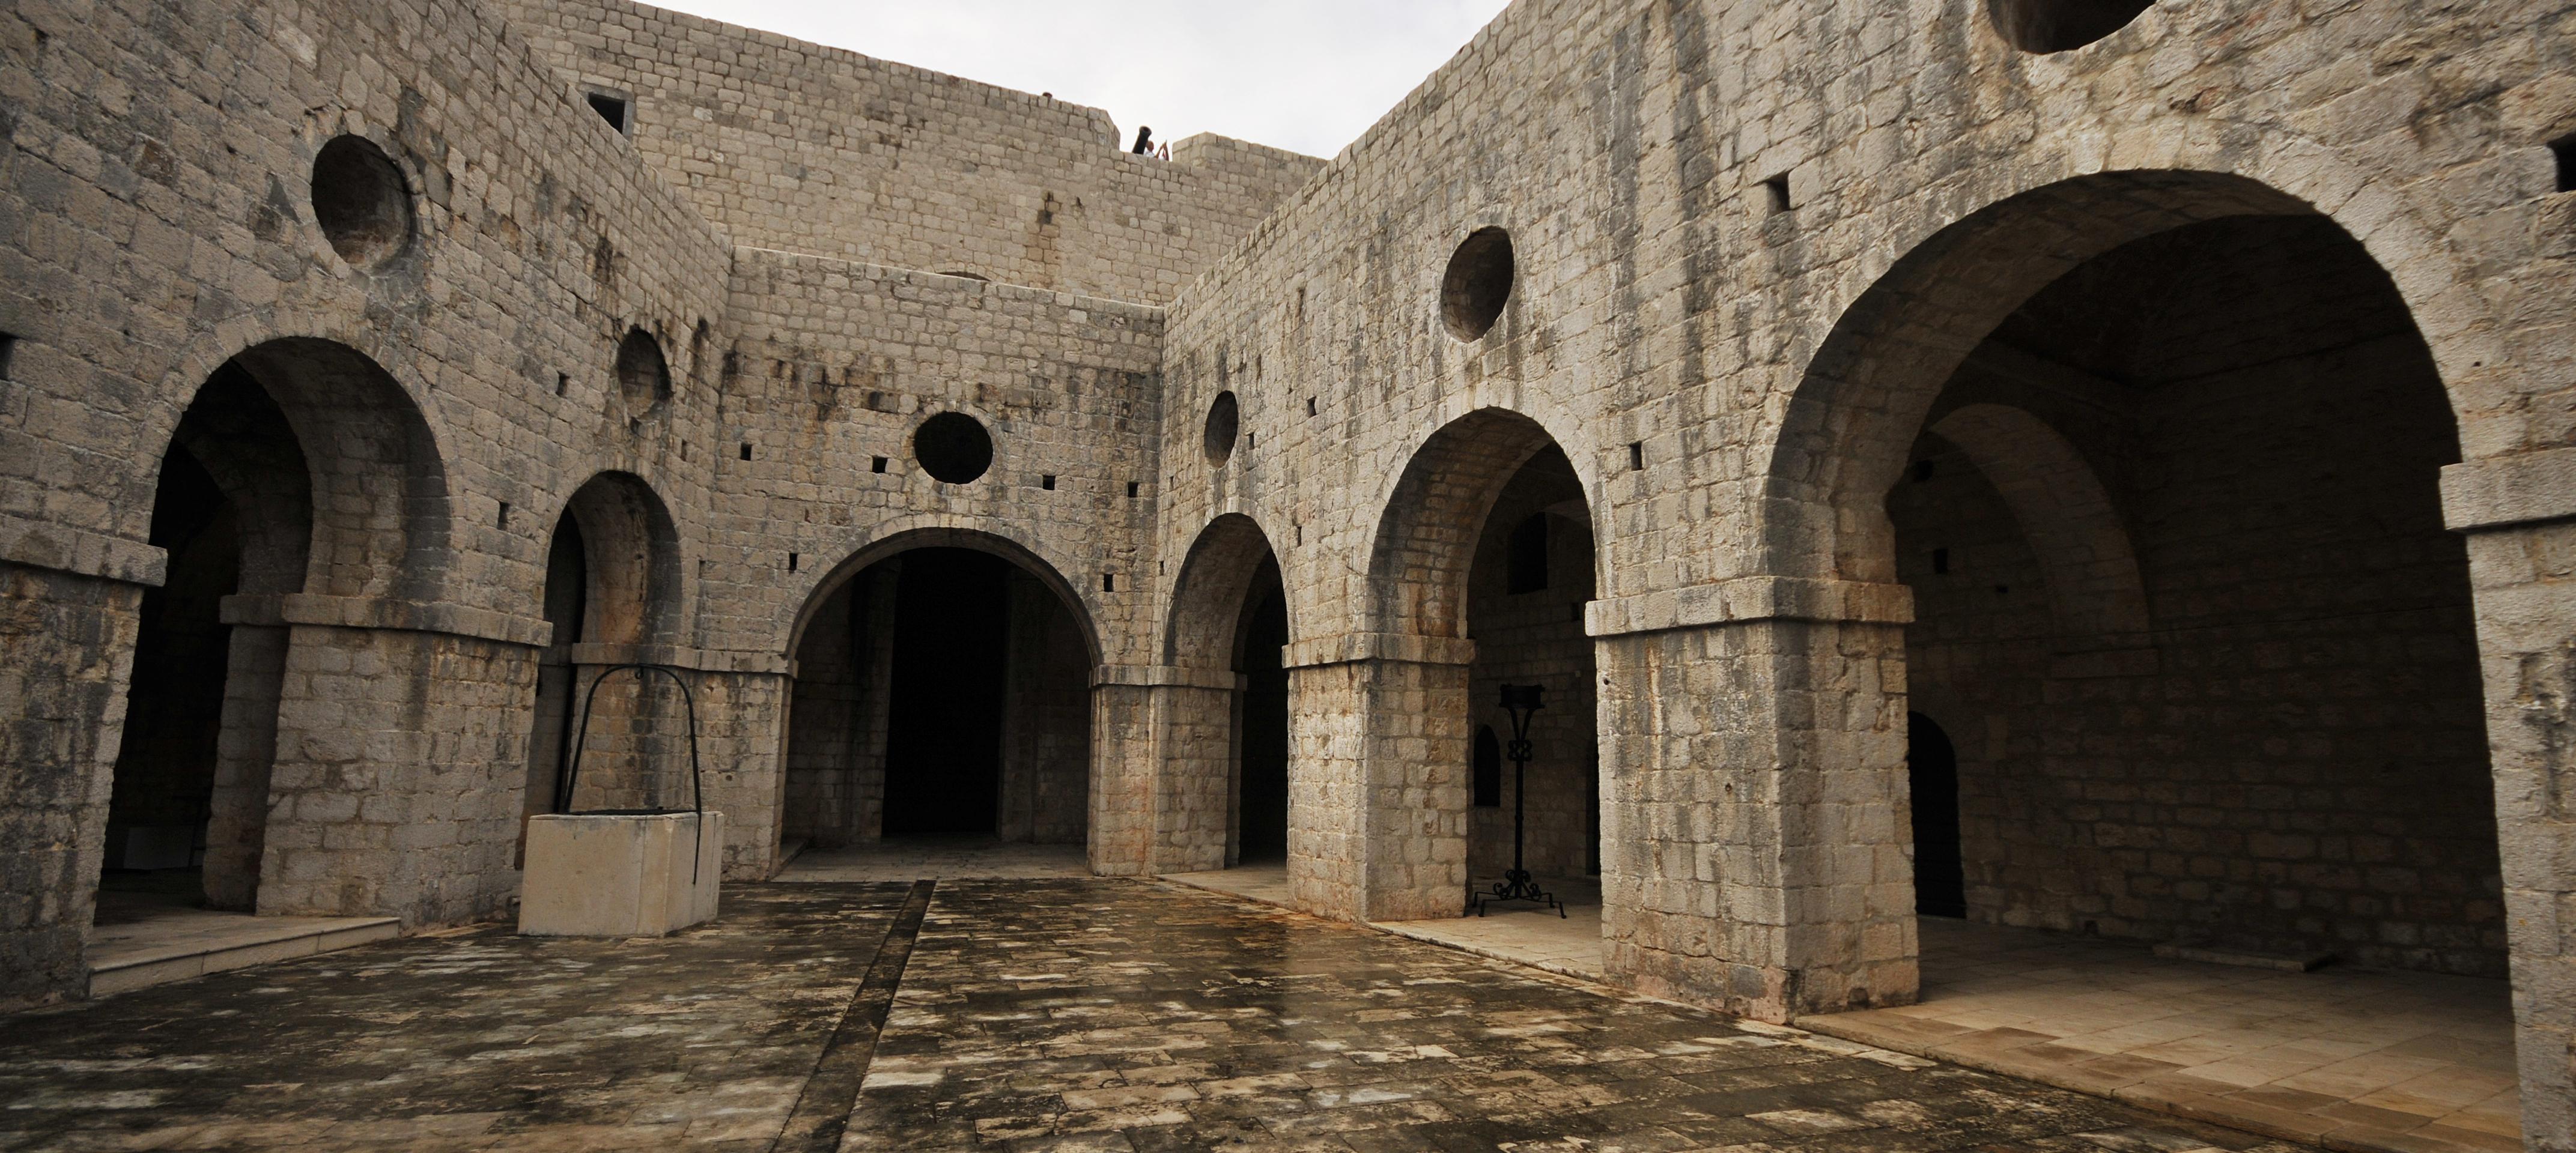 Visite guidée sur les lieux de tournage de Game of Thrones à Dubrovnik